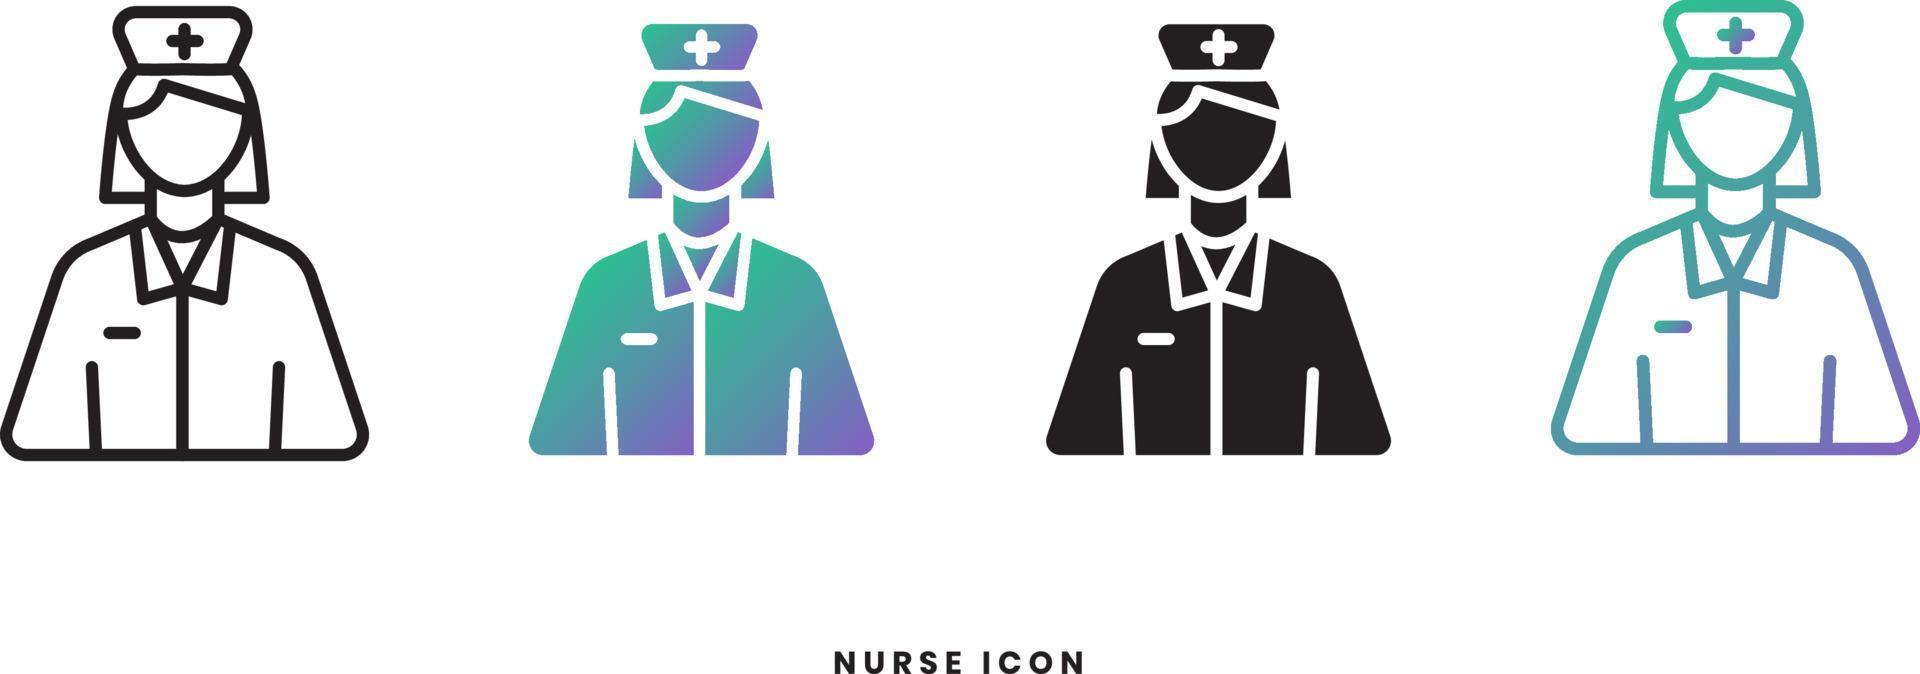 vektor sjuksköterska kvinnlig ikon i solid, gradient och linje stilar. trendiga färger. isolerad på en vit bakgrund